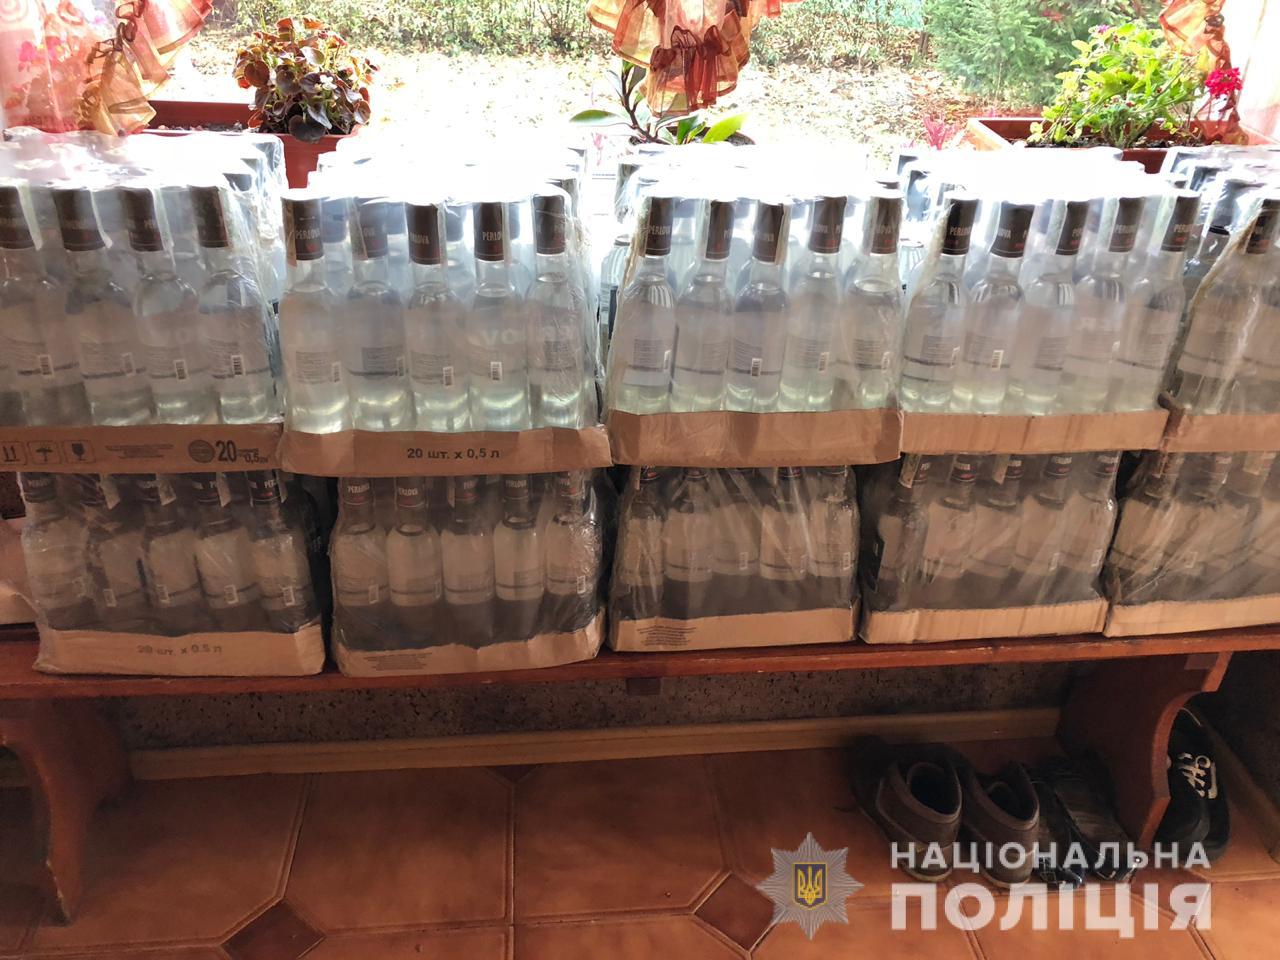 Во Львове осудили нелегального производителя водки